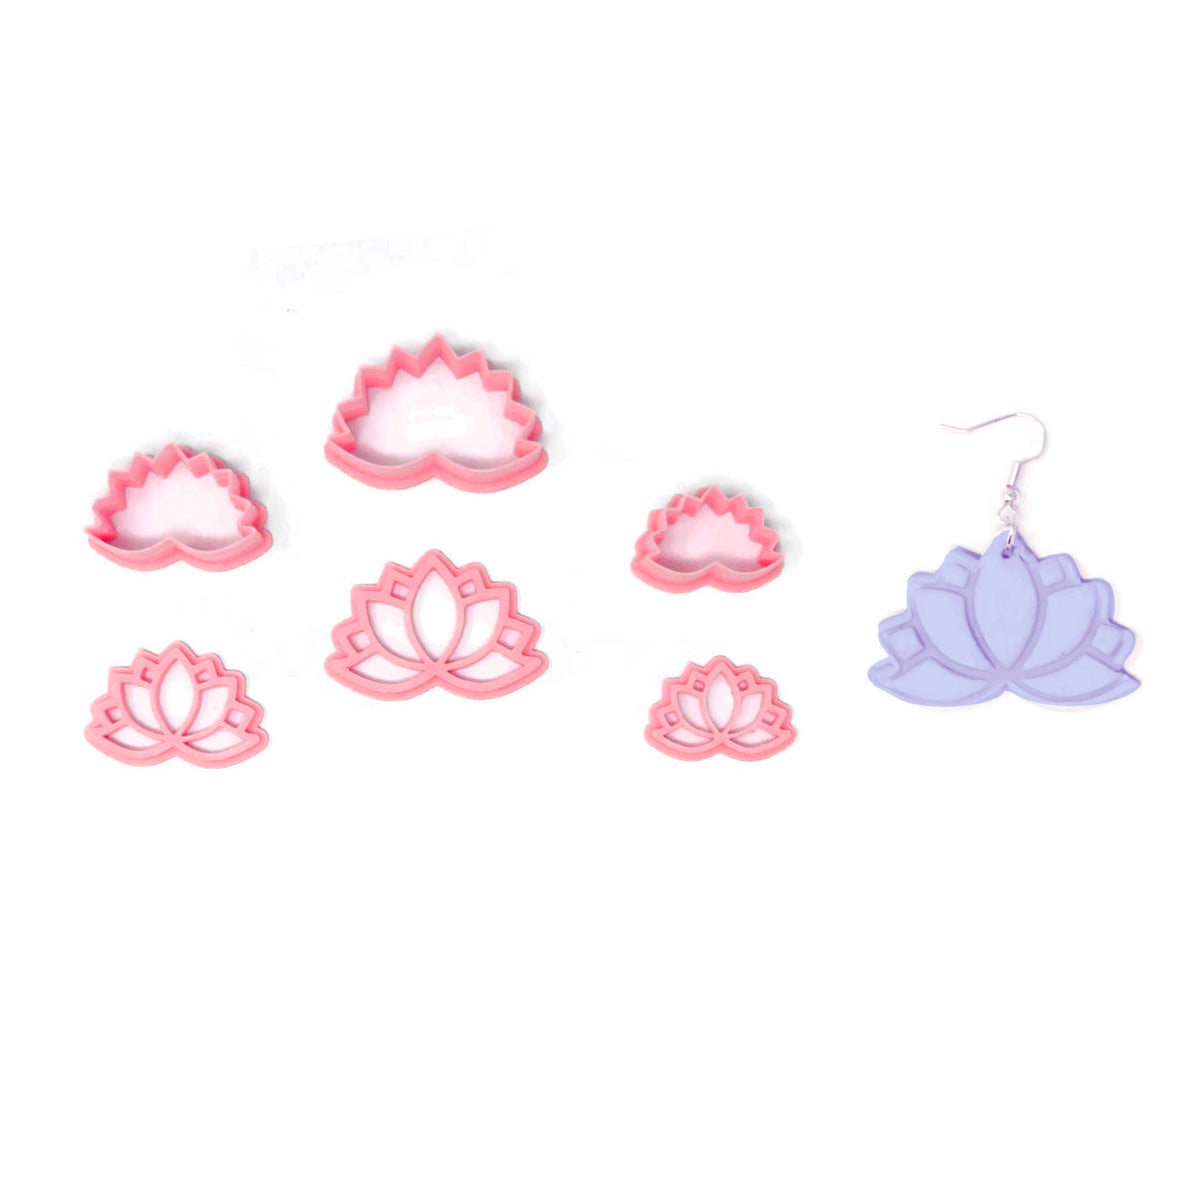 Puocaon - Cortadores de arete de arcilla floral – 9 formas para